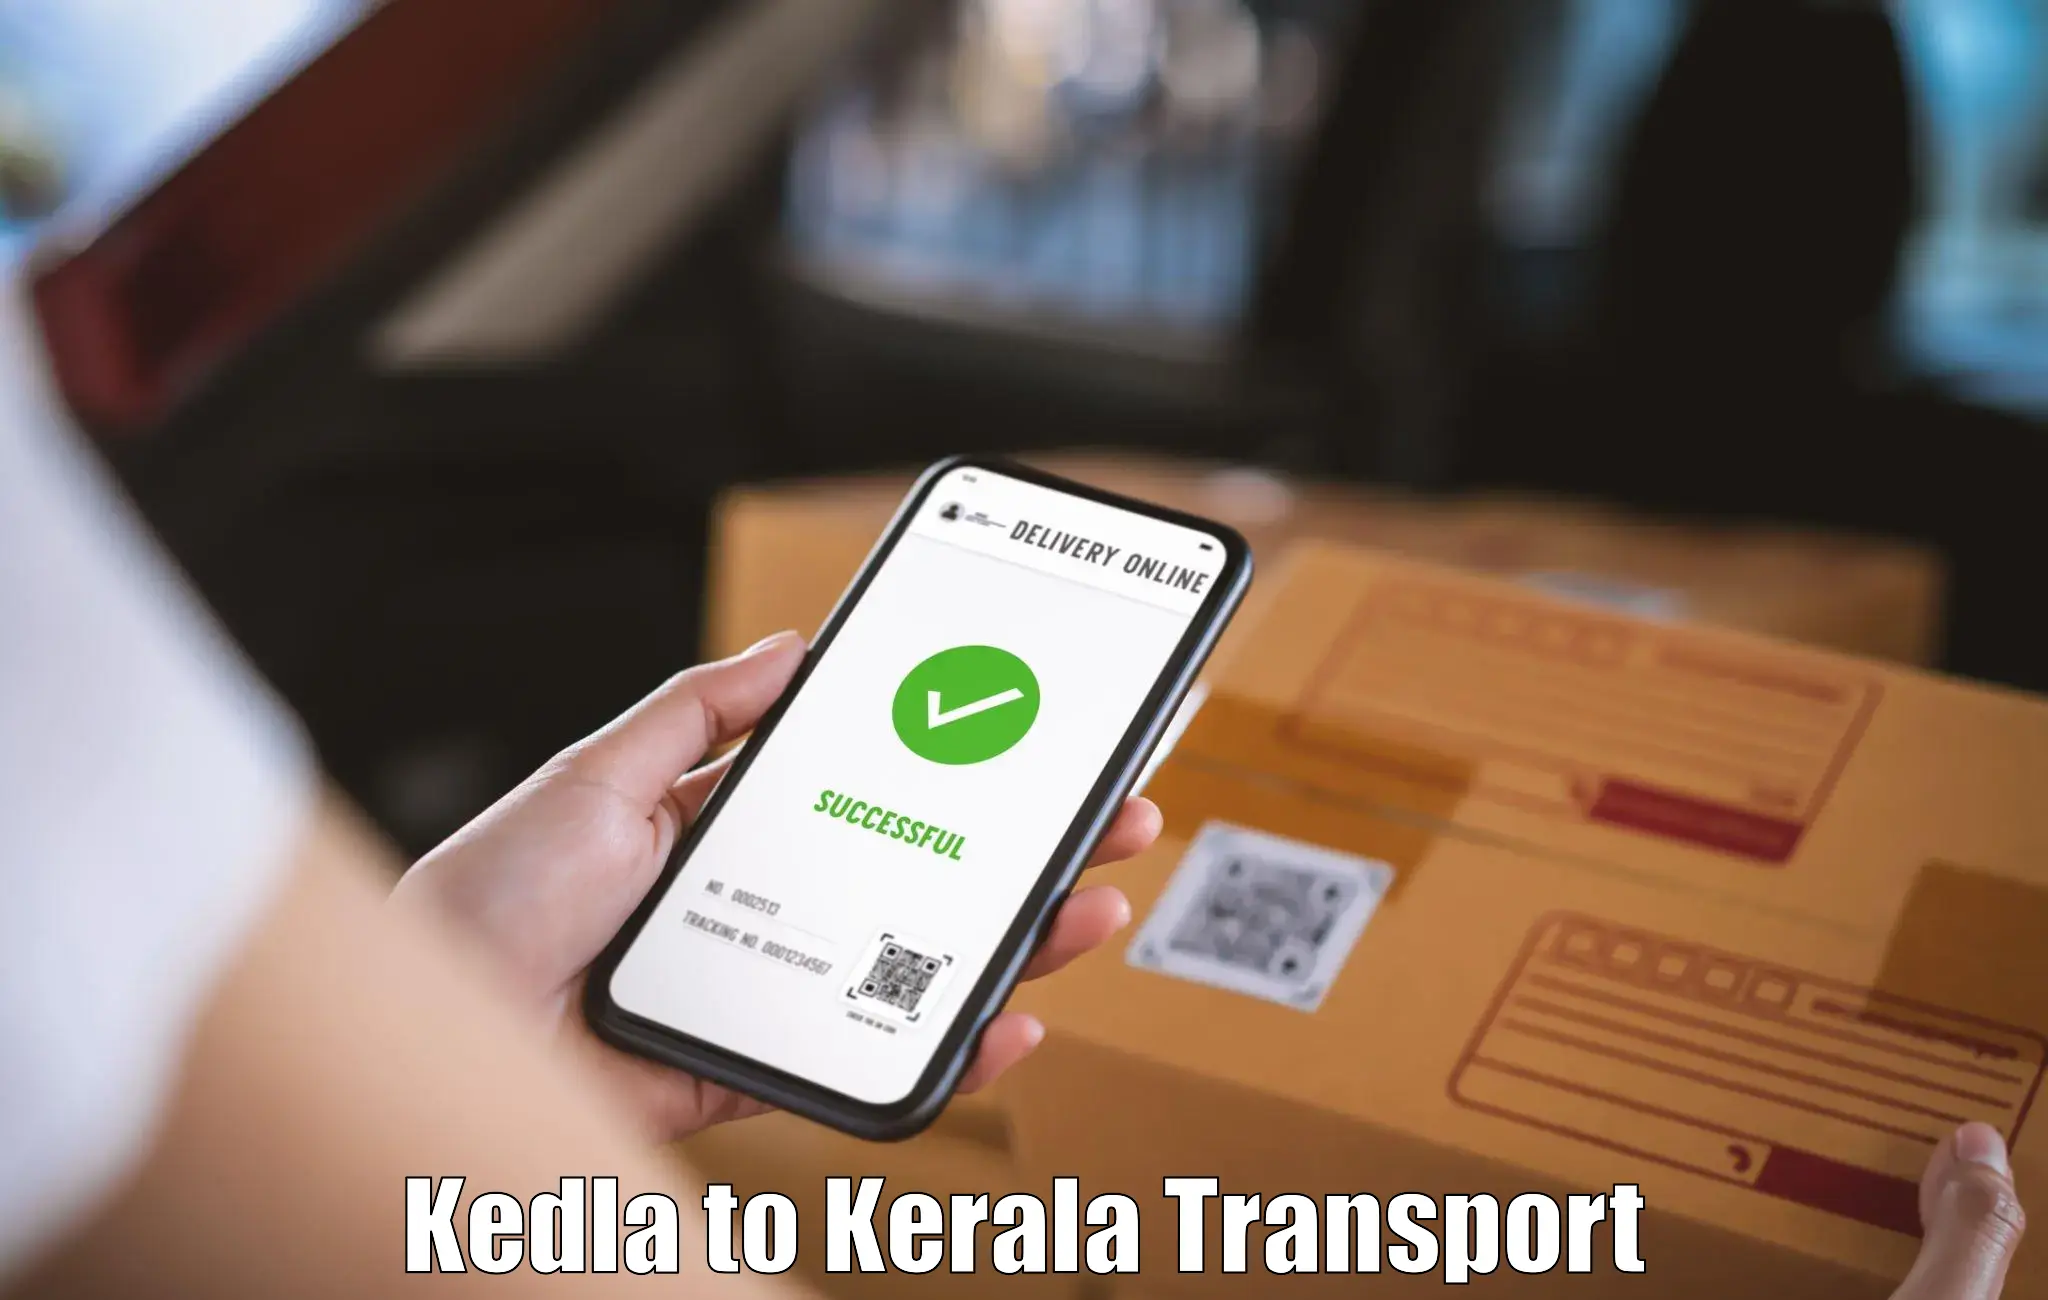 Parcel transport services Kedla to Ernakulam